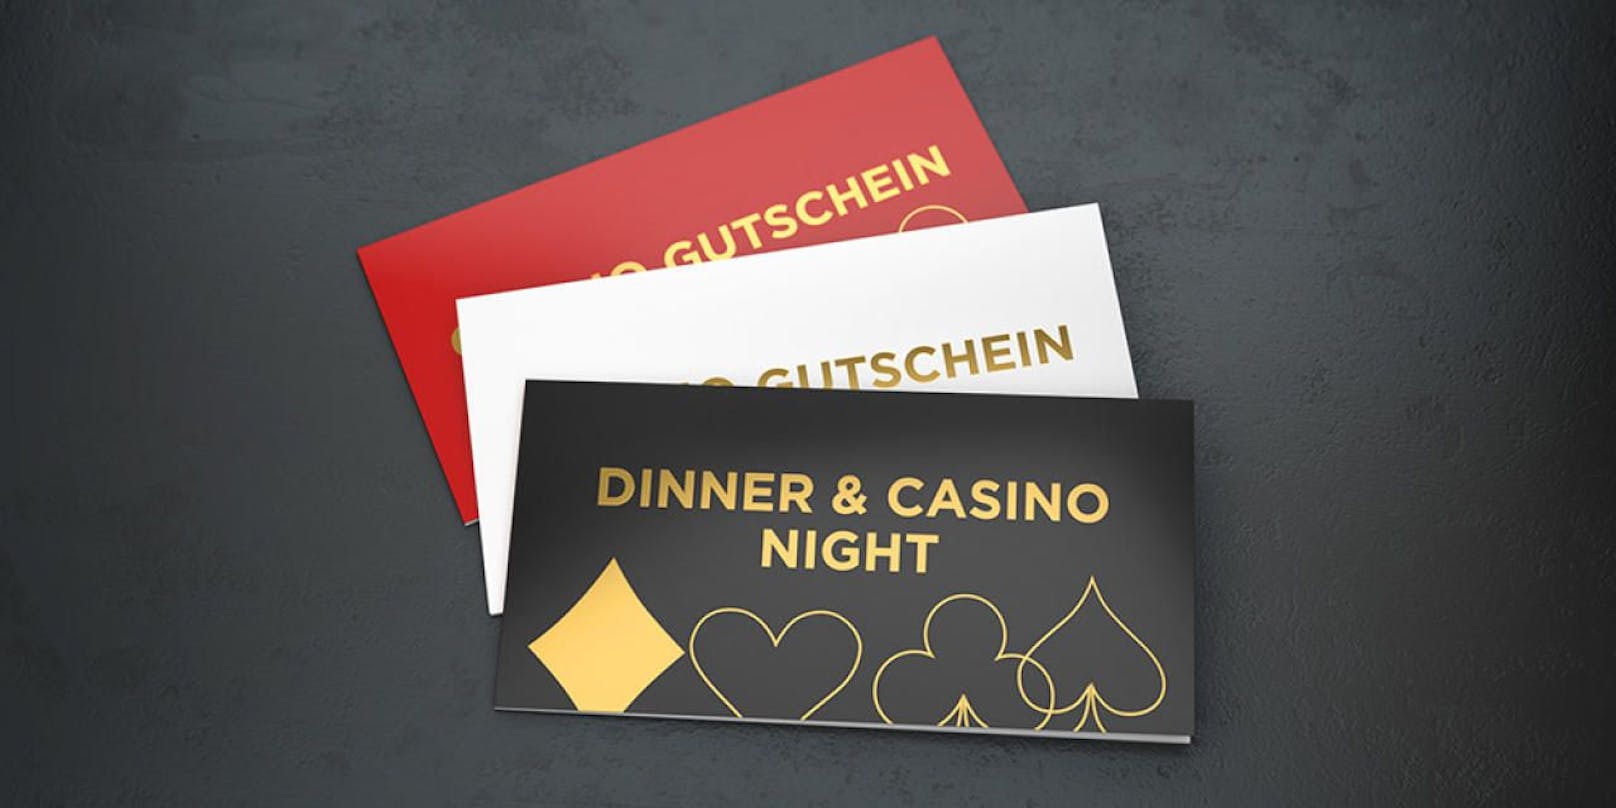 Die Dinner &amp; Casino Night Gutscheine bieten Vergnügen, Kulinarik und Spiel.